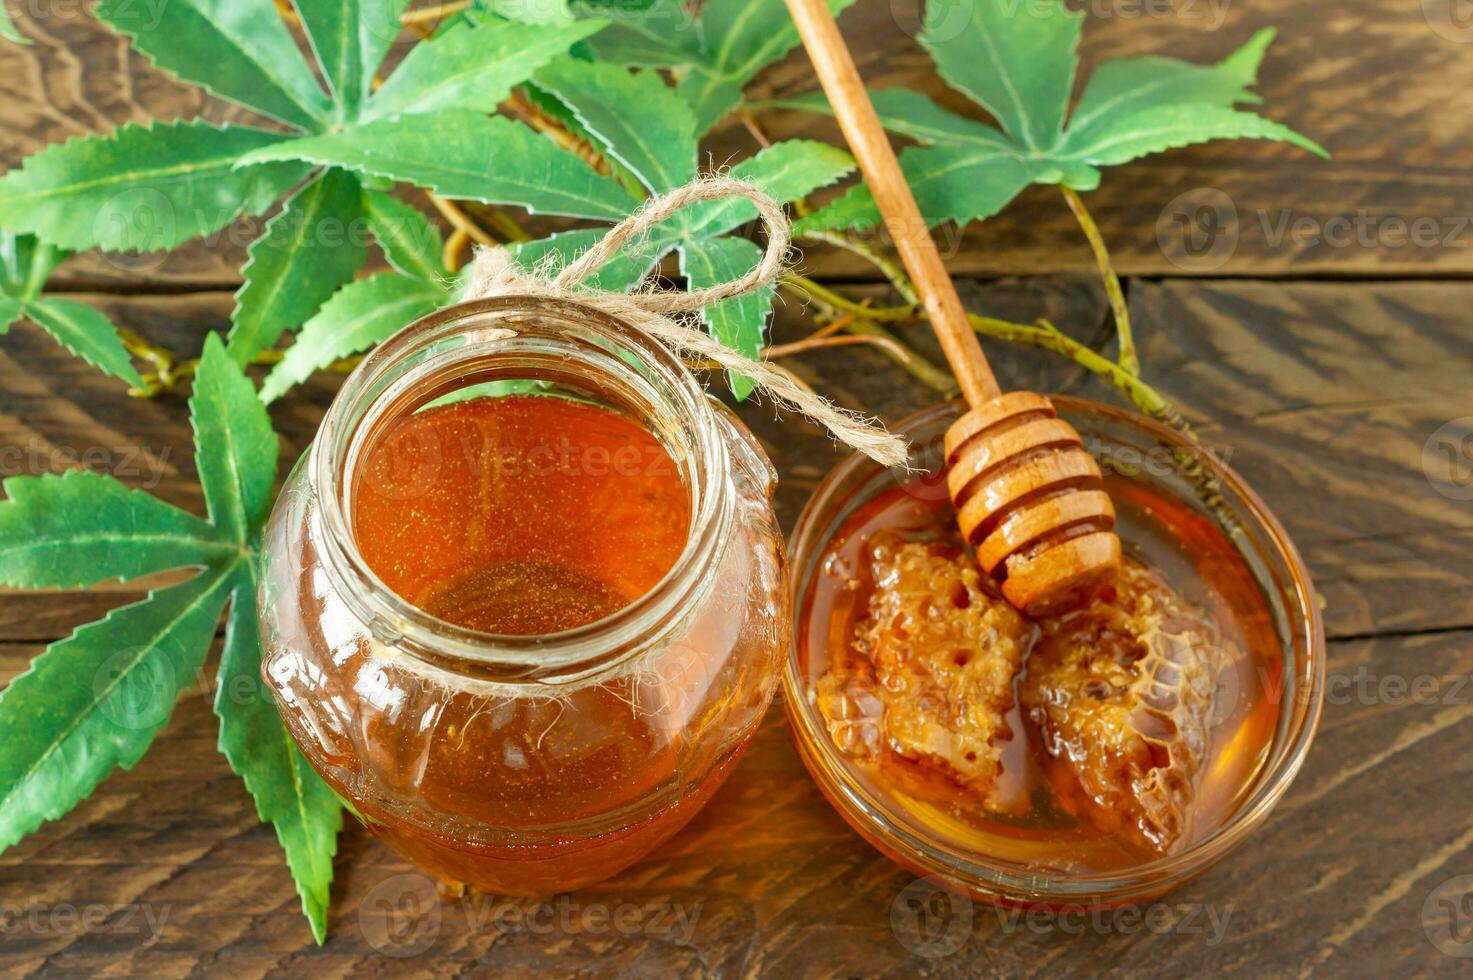 Cannabisblätter, Marihuana und frischer reiner Bio-Honig im Glasgefäß auf Holztischhintergrund. honig cbd konzept. foto